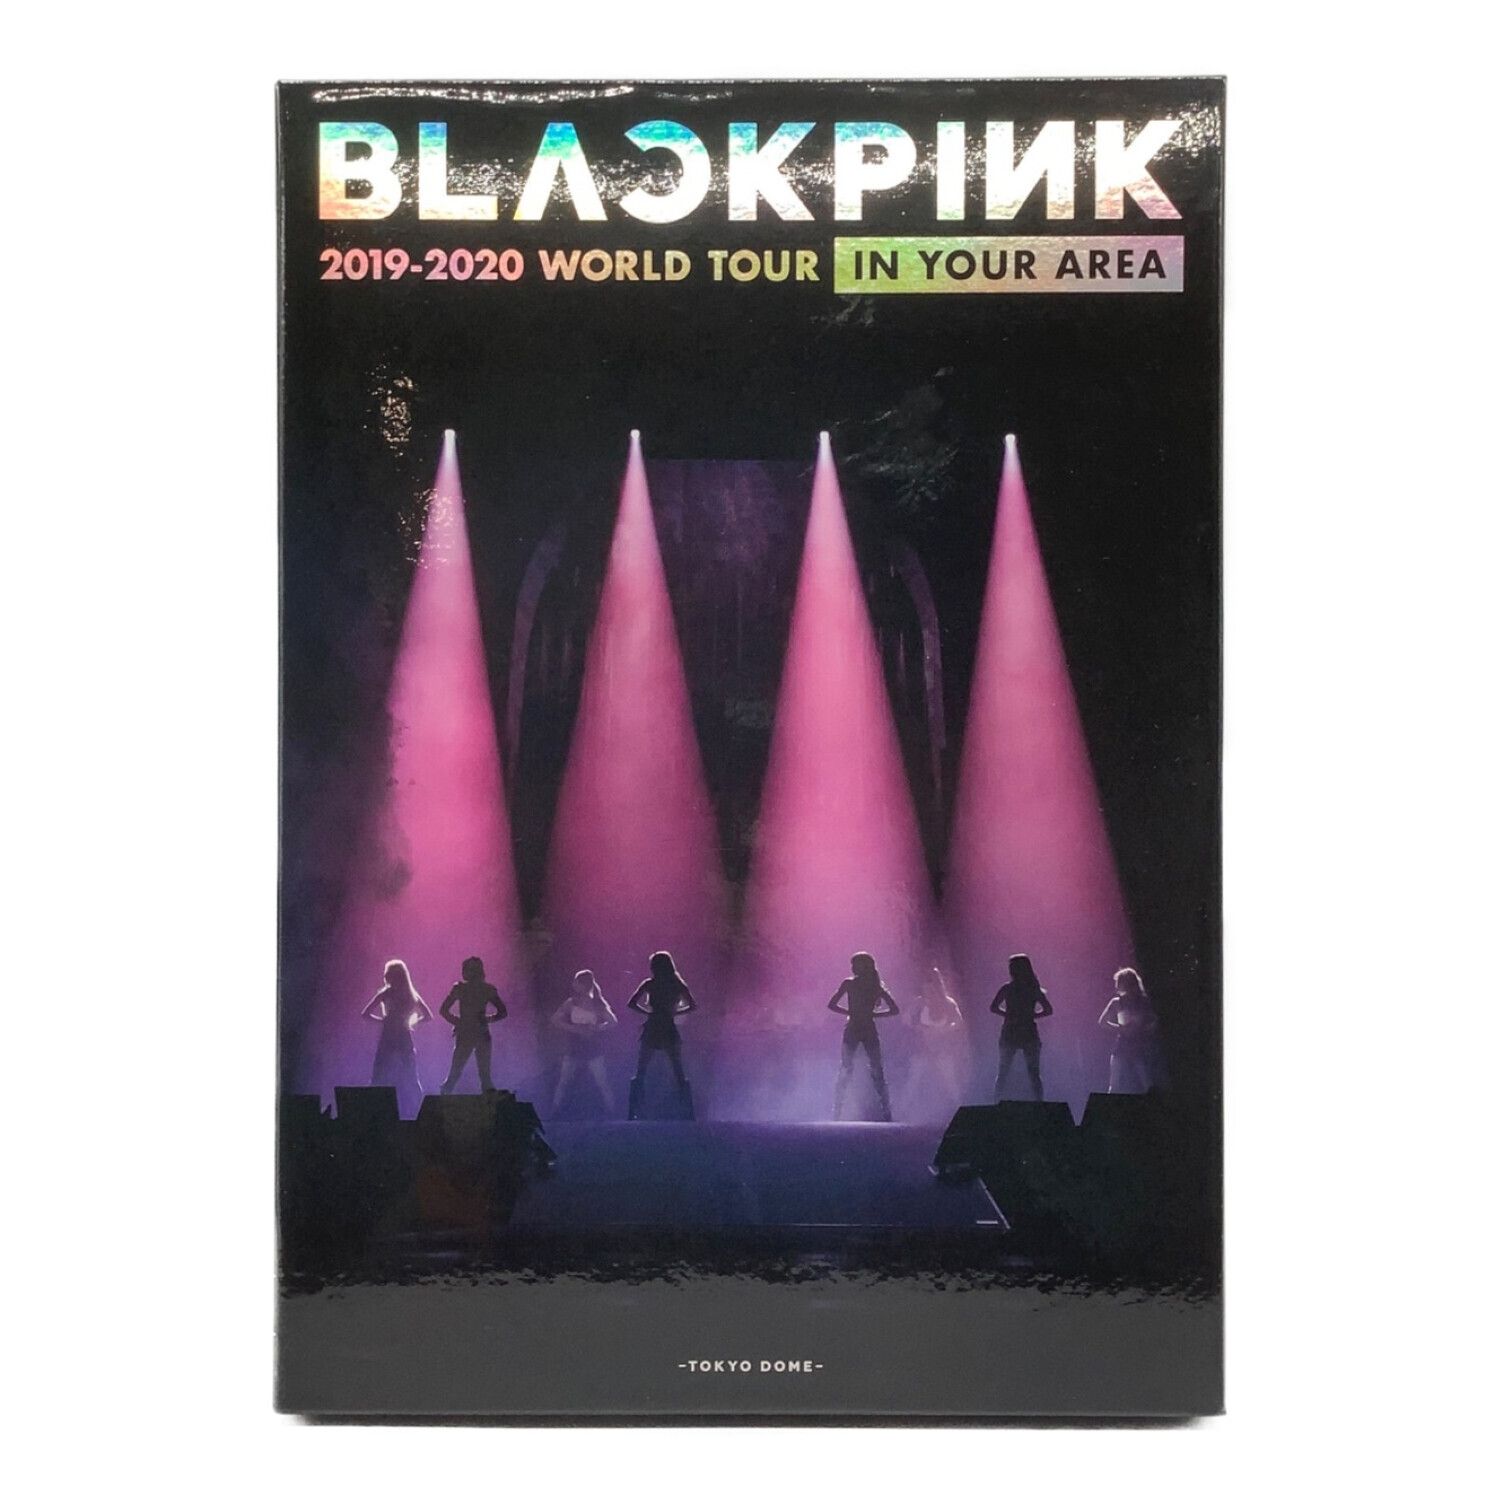 日本直営店 BLACKPINK 2019-2020 WORLD TOUR Blu-ray - DVD/ブルーレイ